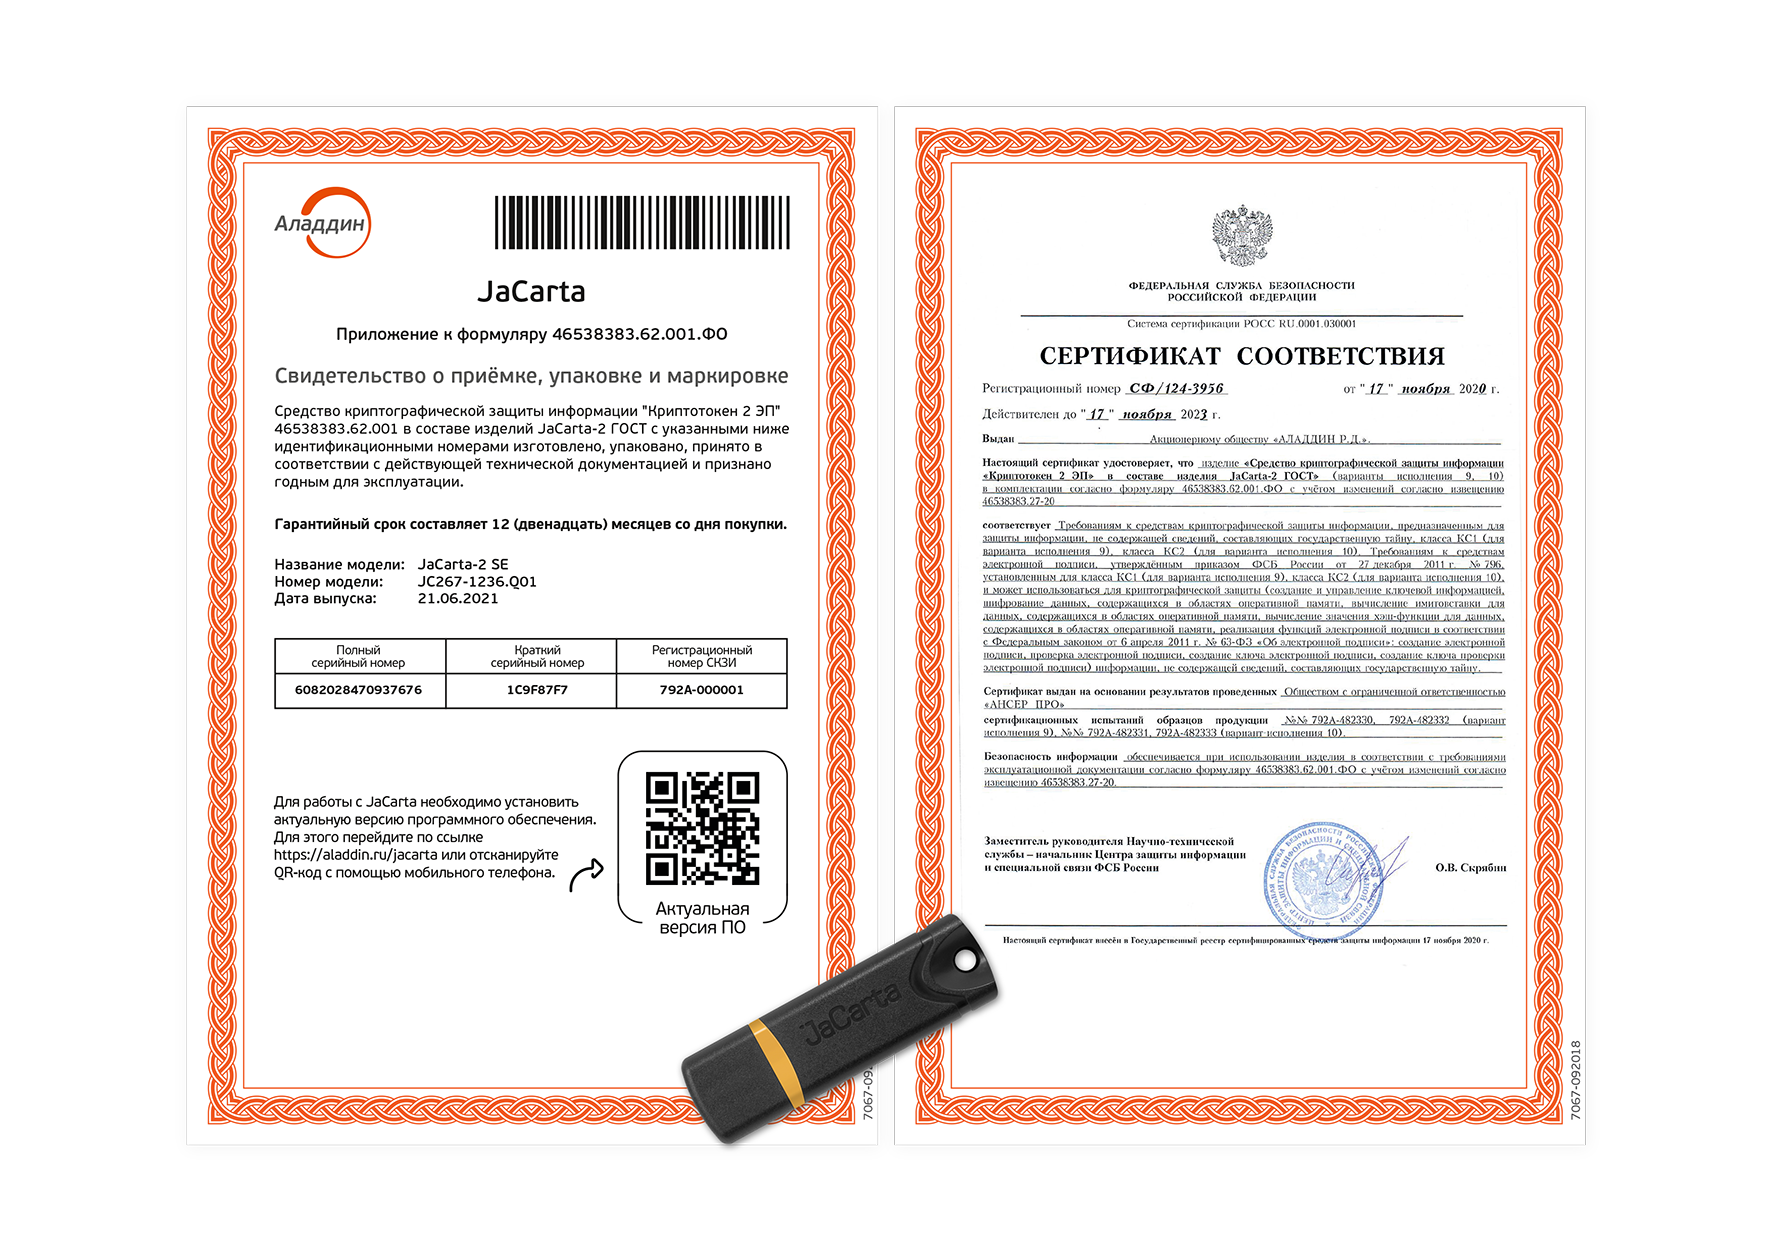 USB-токен Jacarta PKI. Сертификат ФСТЭК. Сертификат электронной подписи. Сертификат соответствия электронной подписи. Сертификат подписи ЭЦП. Поддержка российских сайтов с сертификатами